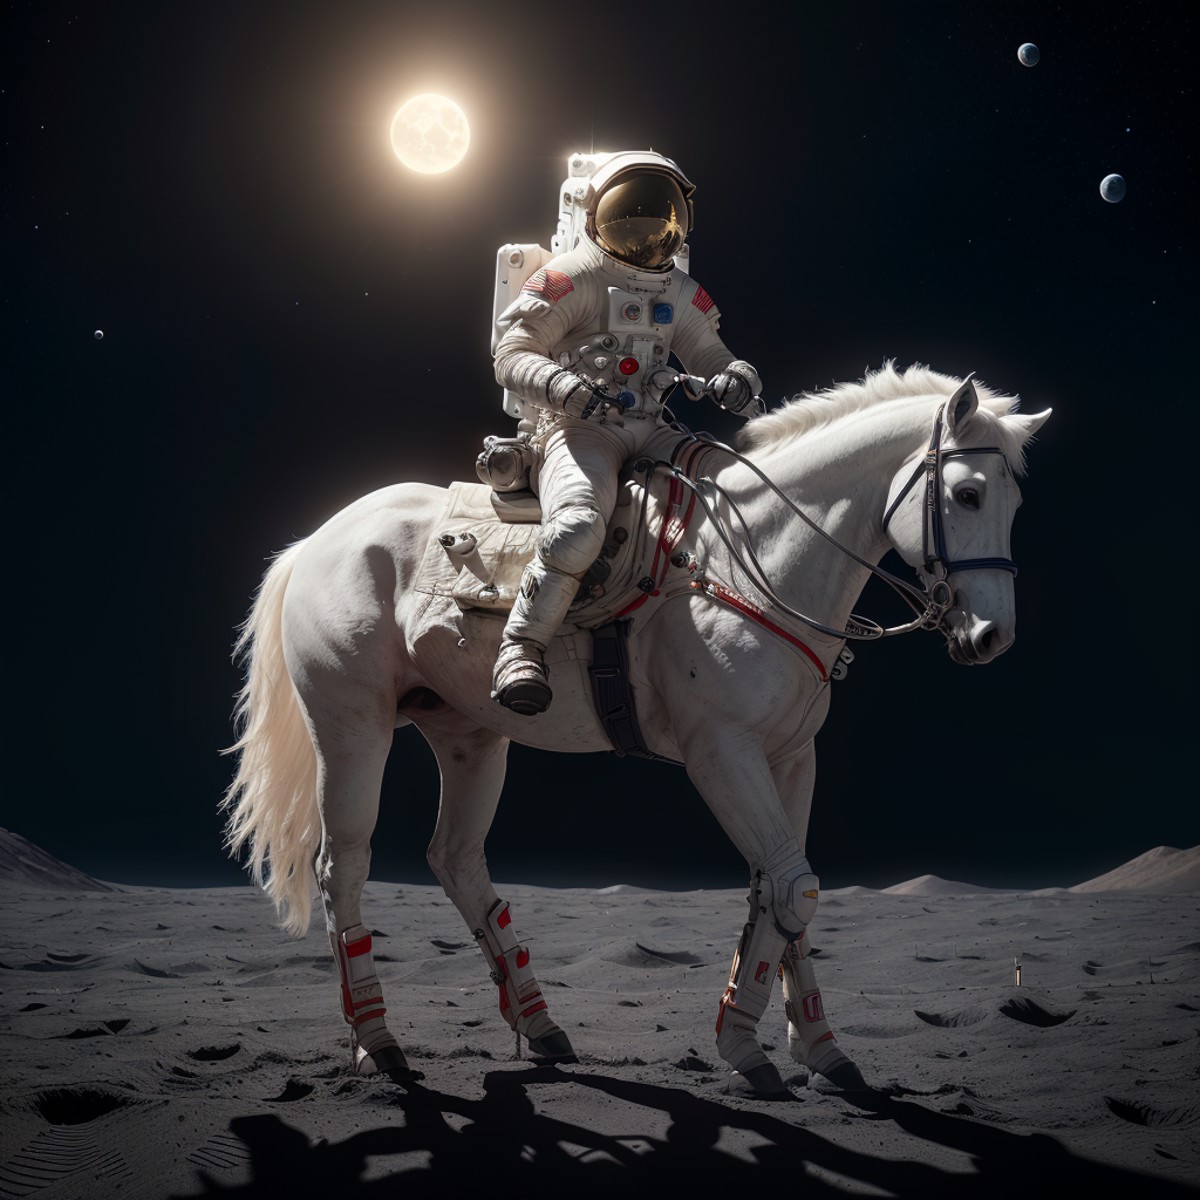 an astronaut riding a horse on the moon, 8k uhd